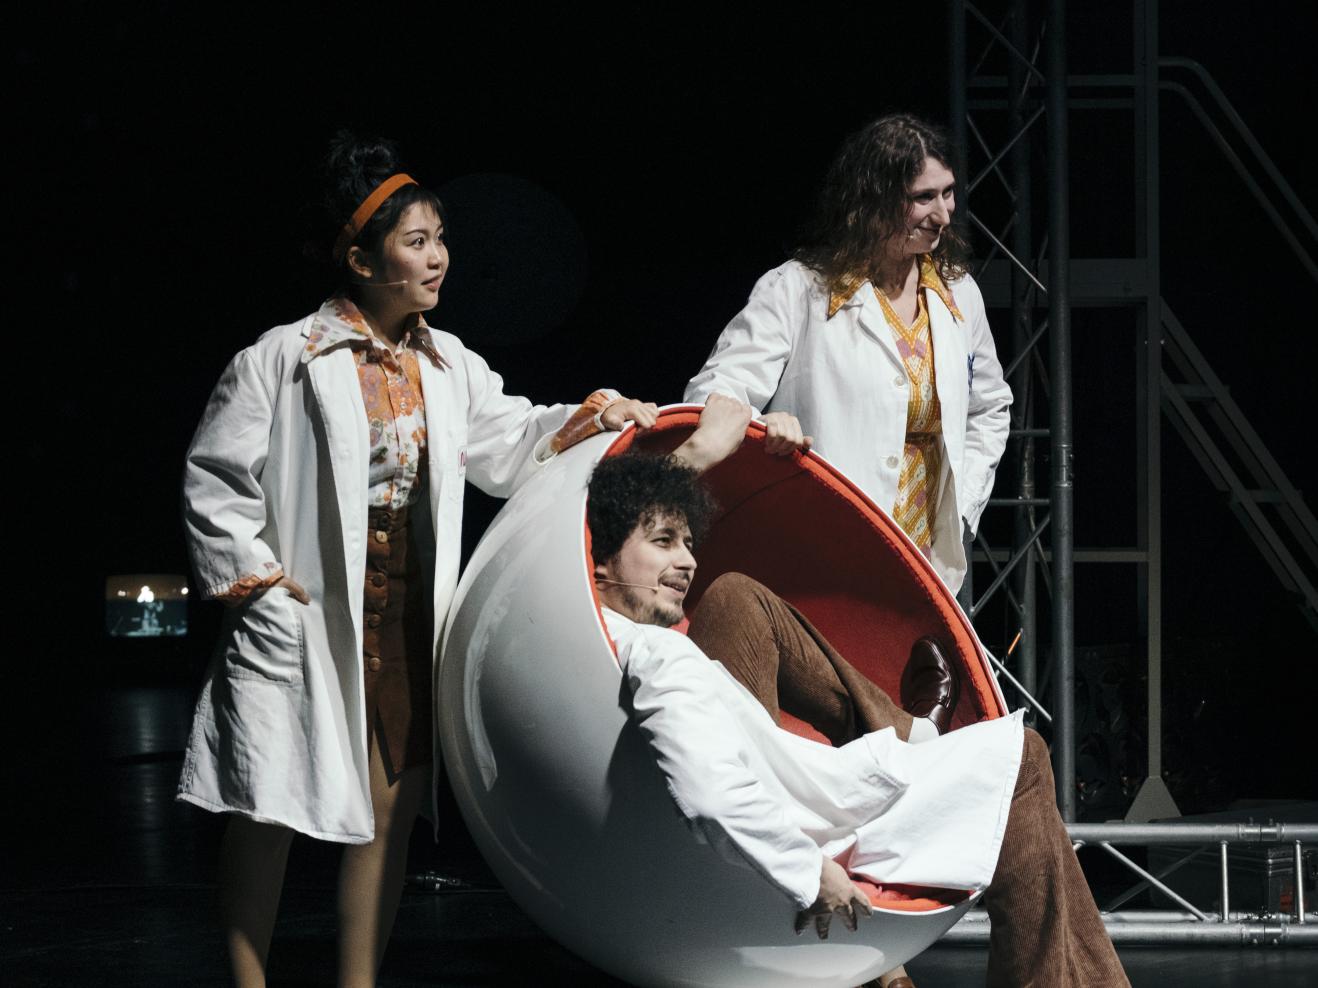 Drei Darsteller*innen in weißen Kitteln auf einer dunklen Bühne, die Person vorne sitzt in einem runden Sessel.